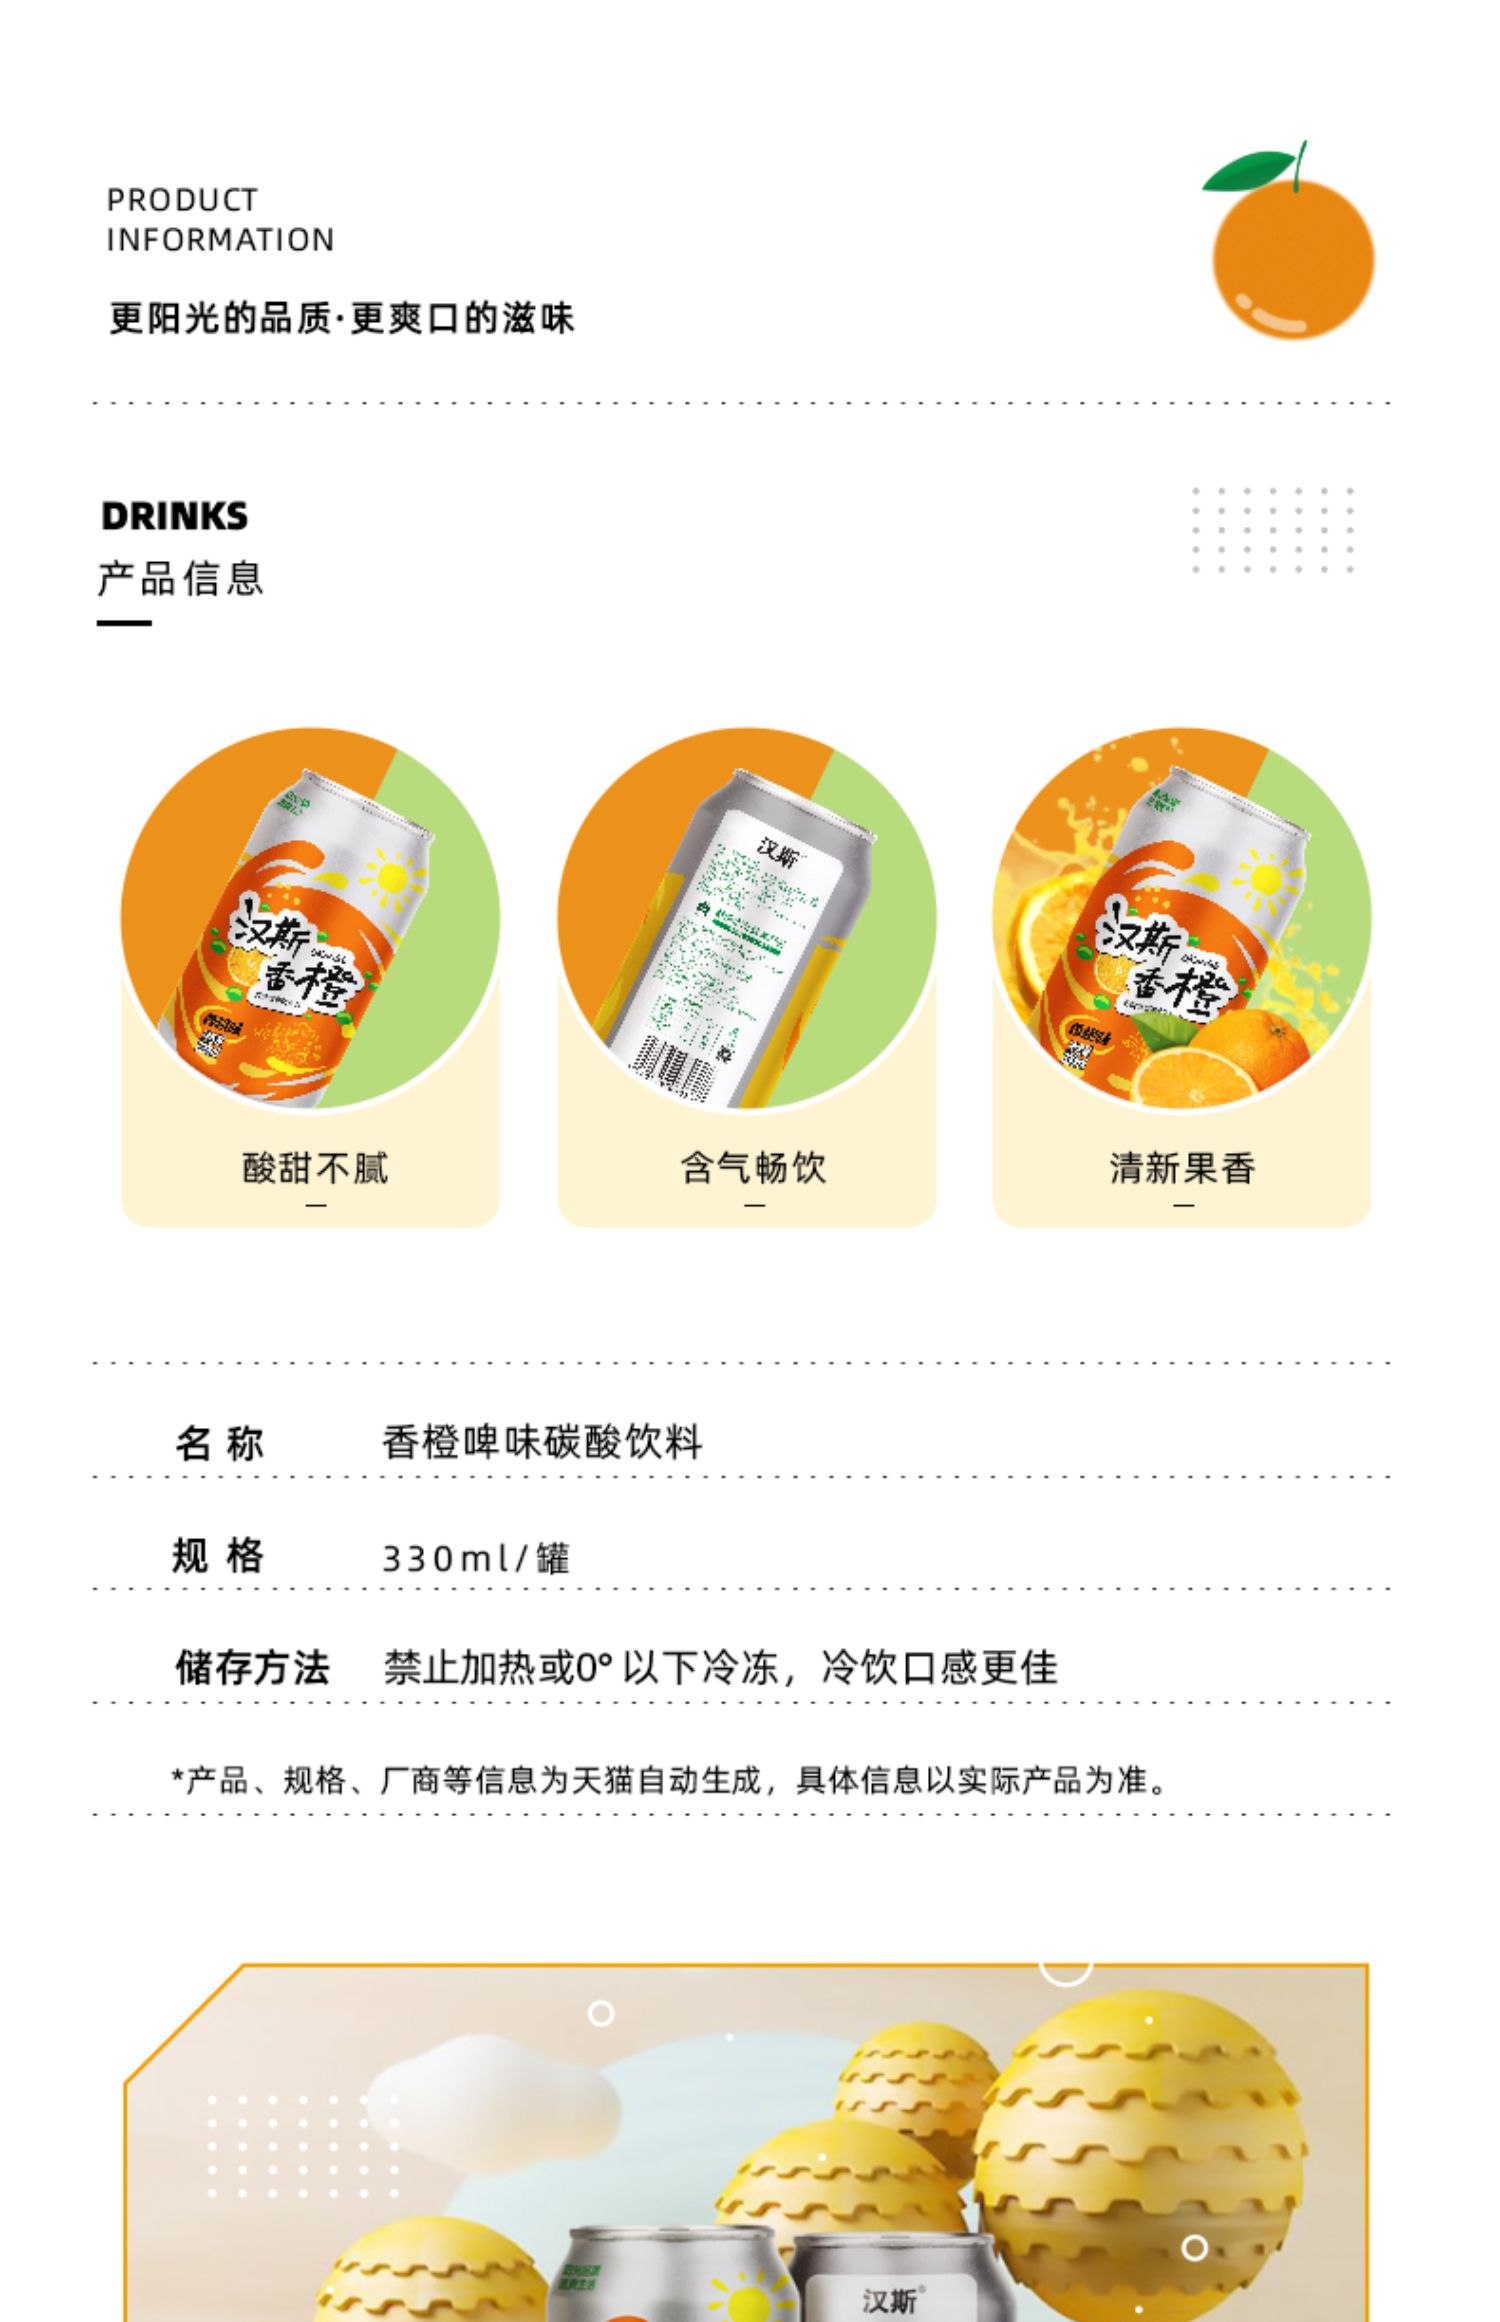 【汉斯】香橙味碳酸饮料330ml*12罐